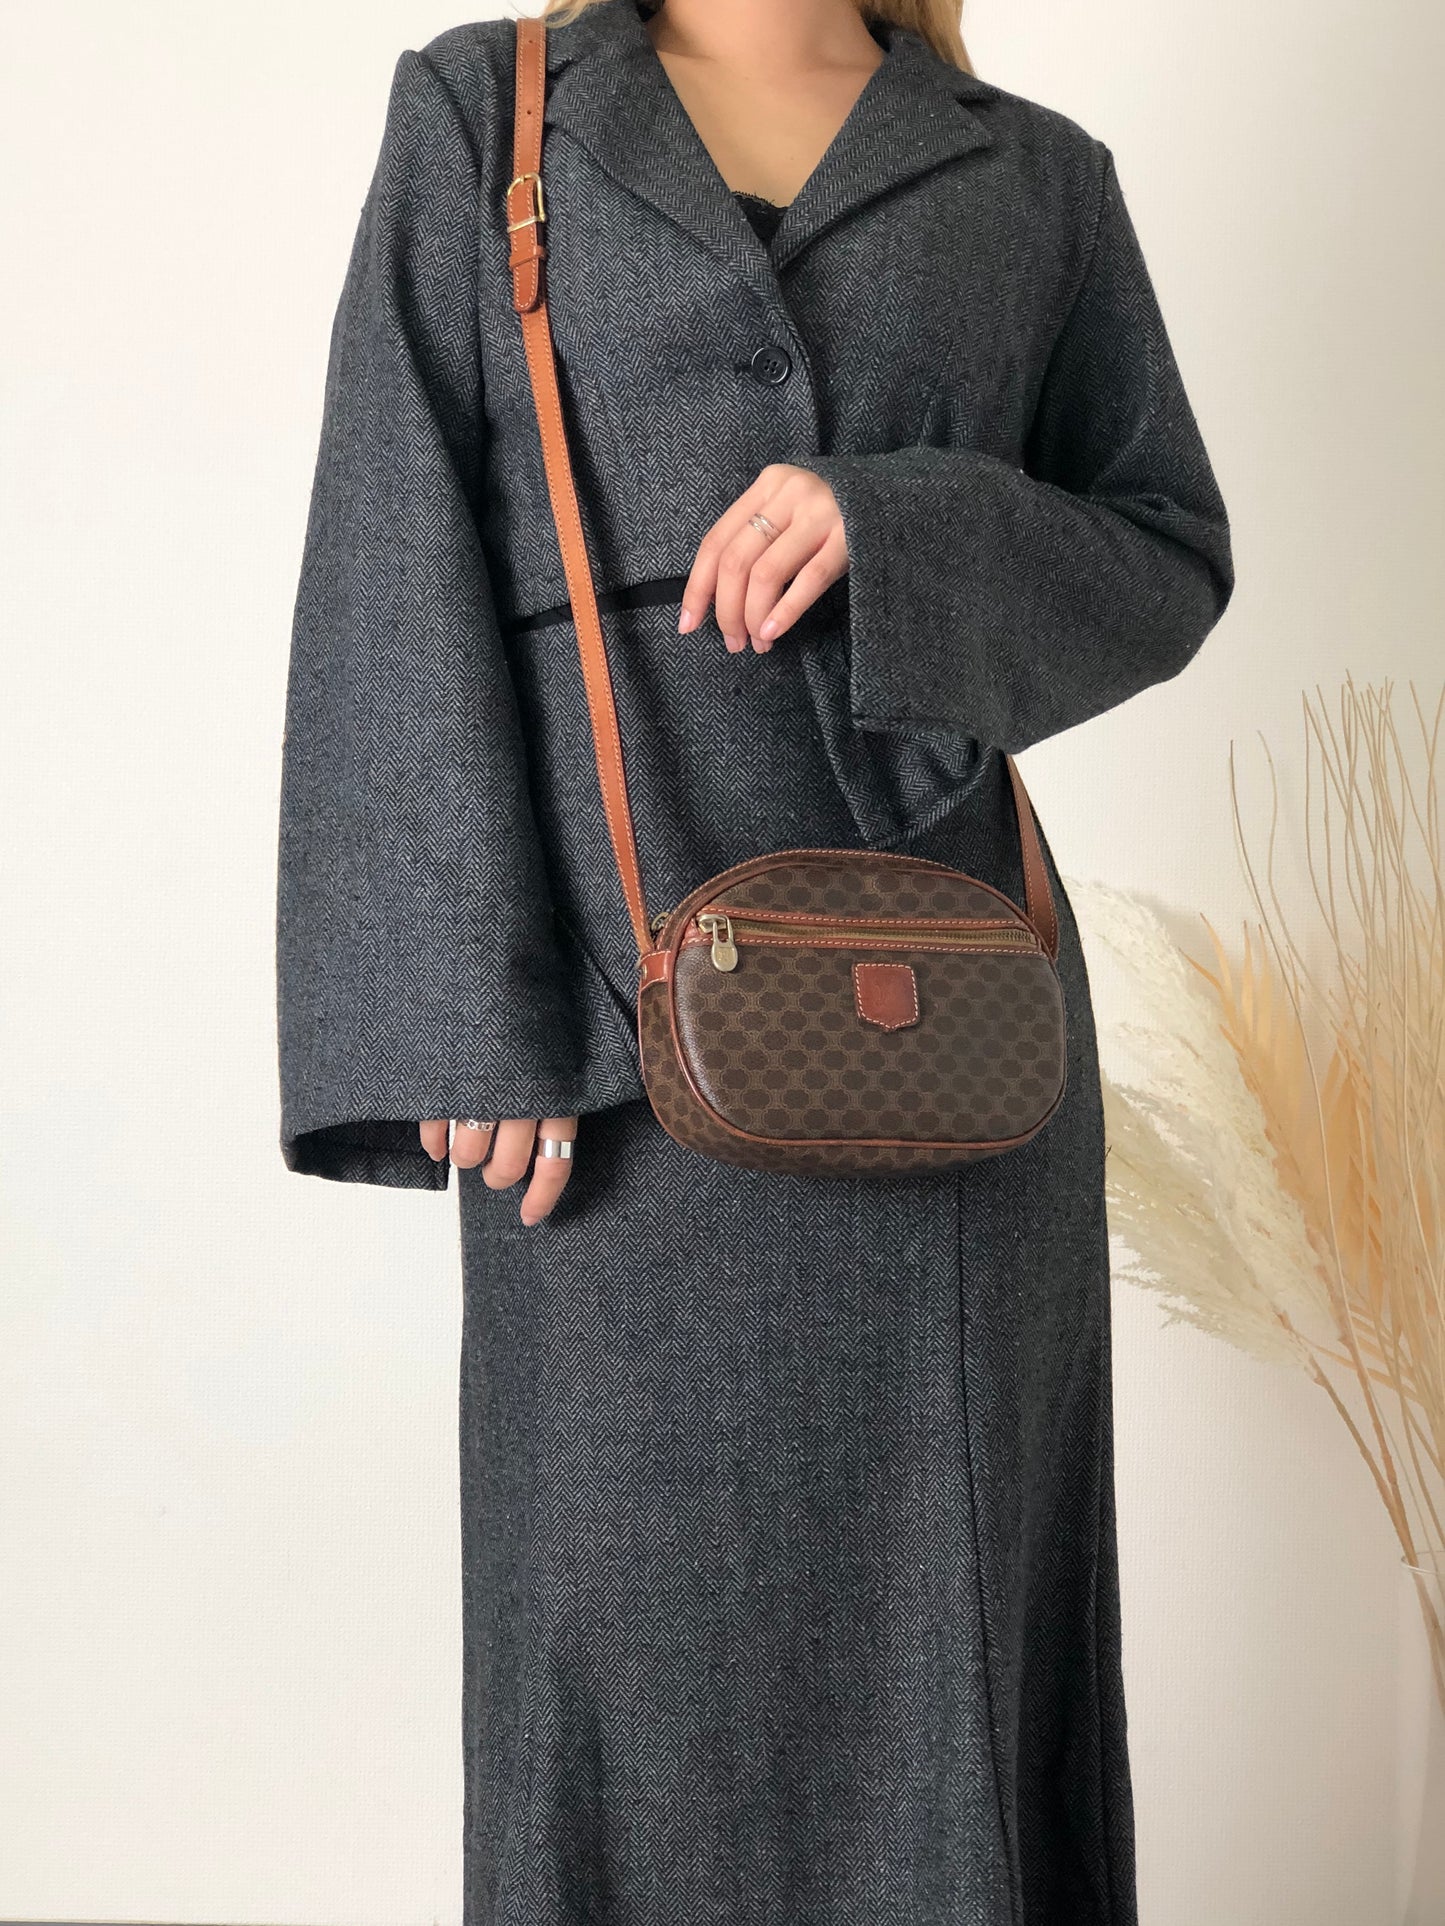 CELINE Macadam Blason Leather Shoulder bag Round bag Brown Vintage 6v63xp